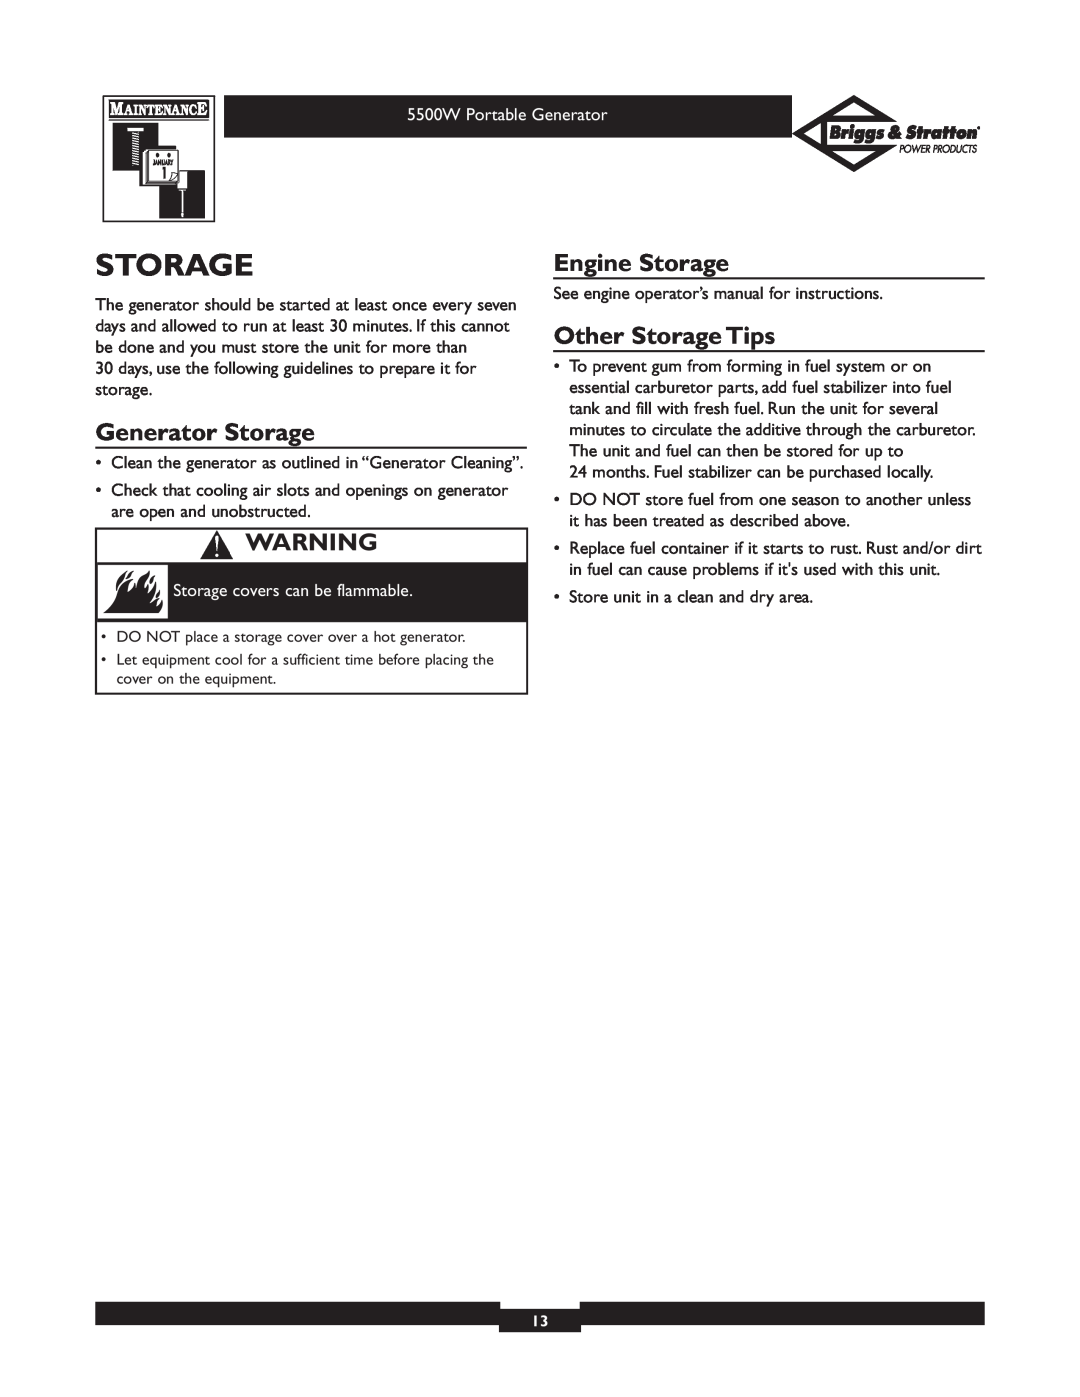 Briggs & Stratton 030209-1 operating instructions Generator Storage, Engine Storage, Other Storage Tips 